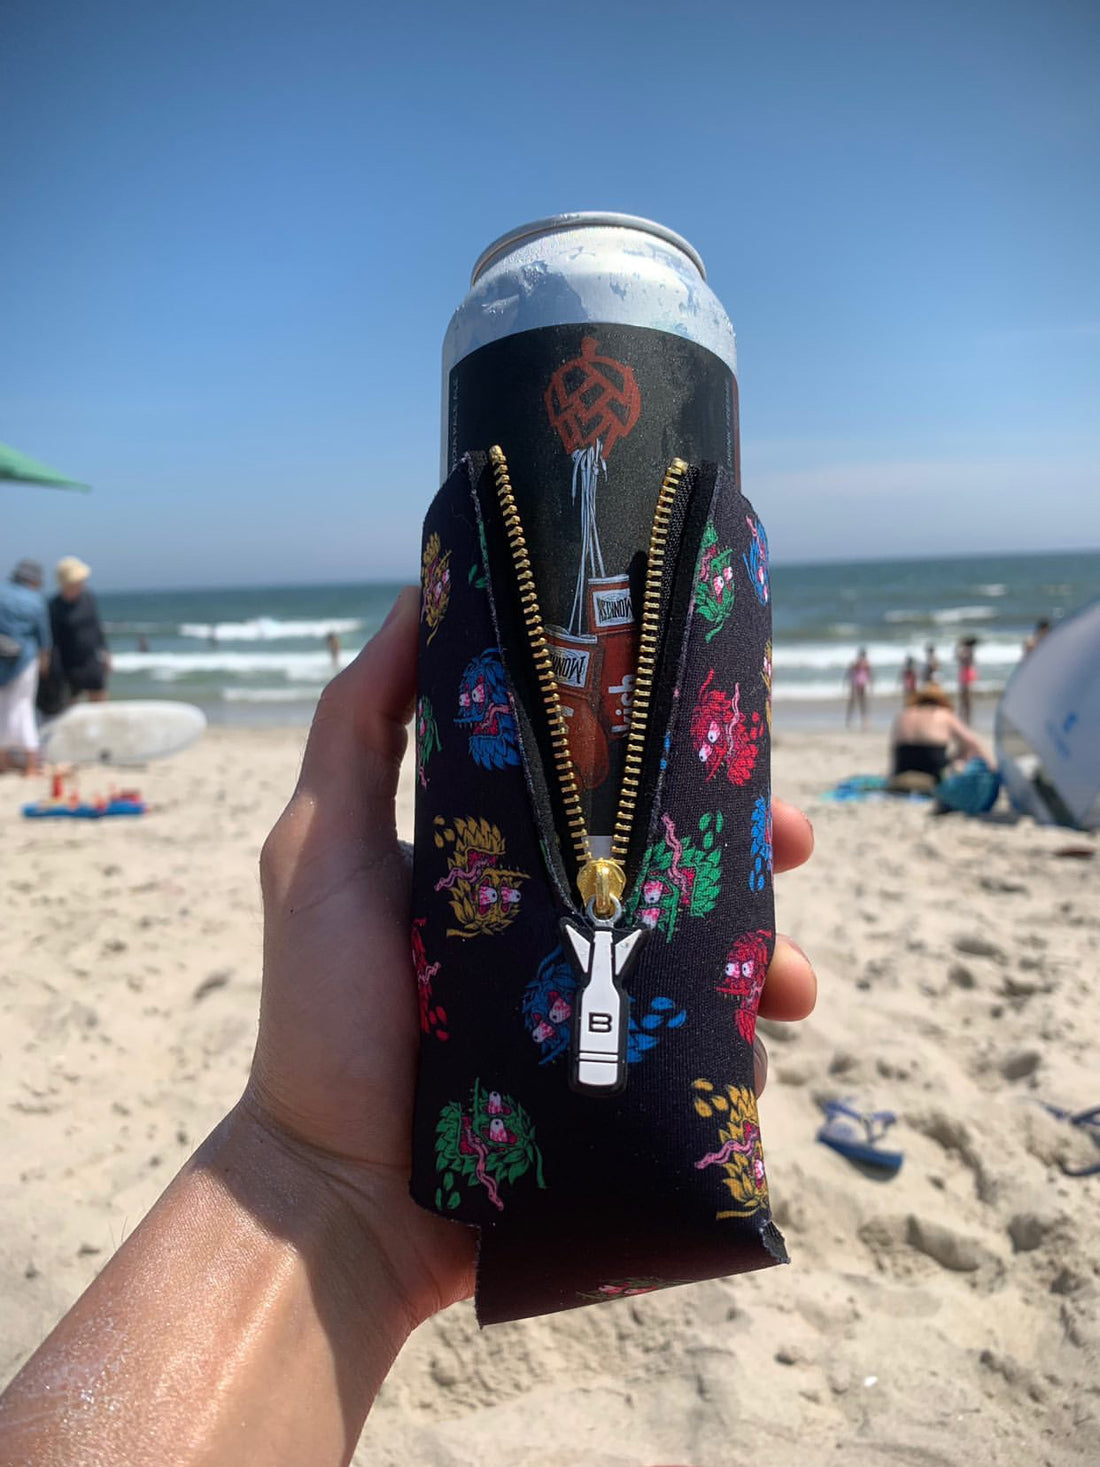 Best Beach Breweries